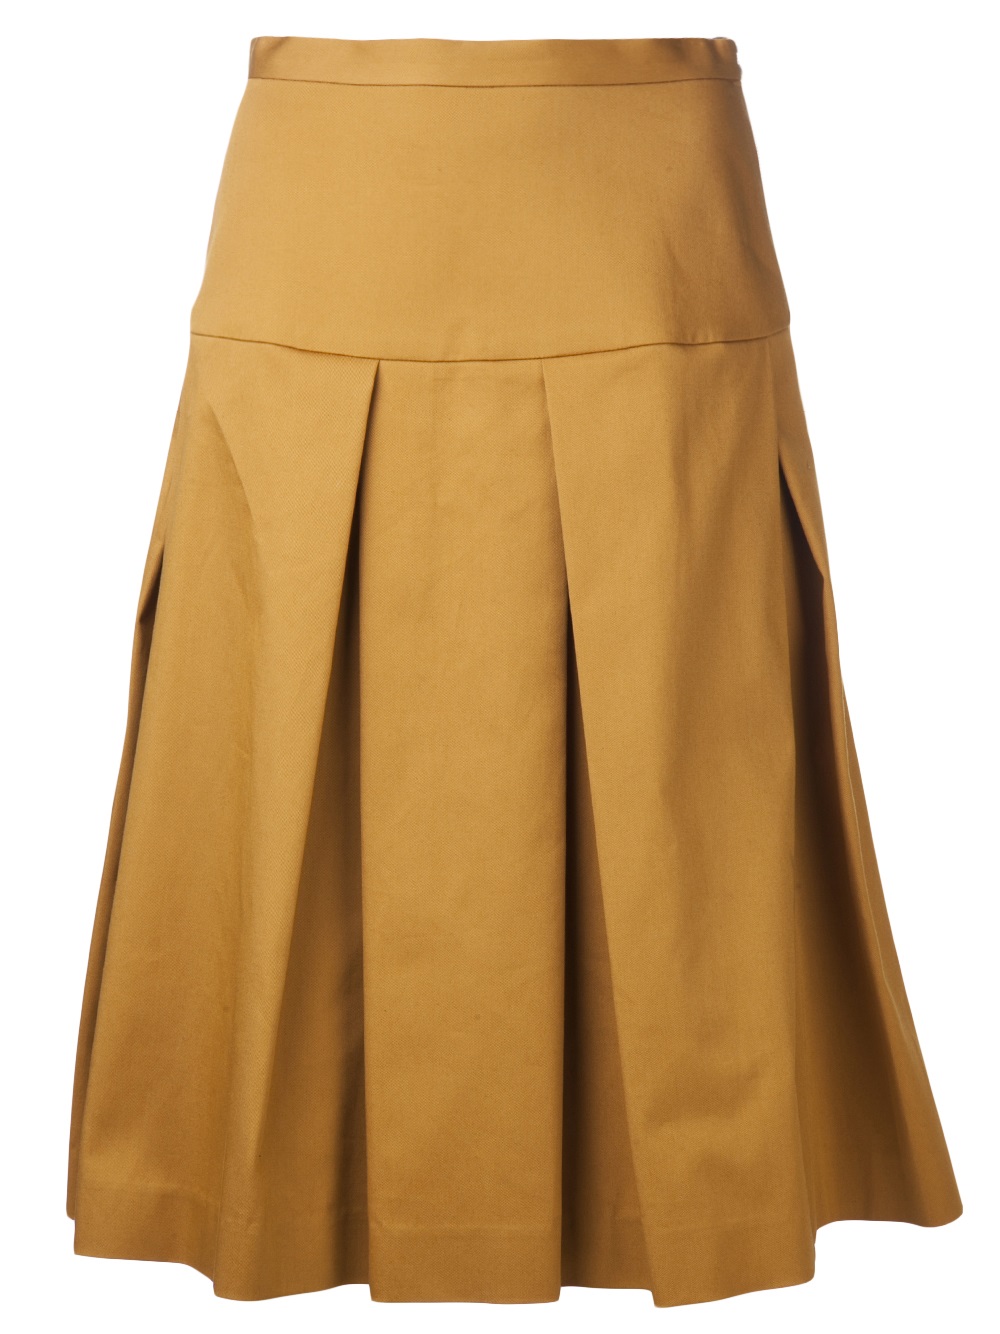 Suno Inverted Pleat Skirt in Yellow (yellow & orange) | Lyst